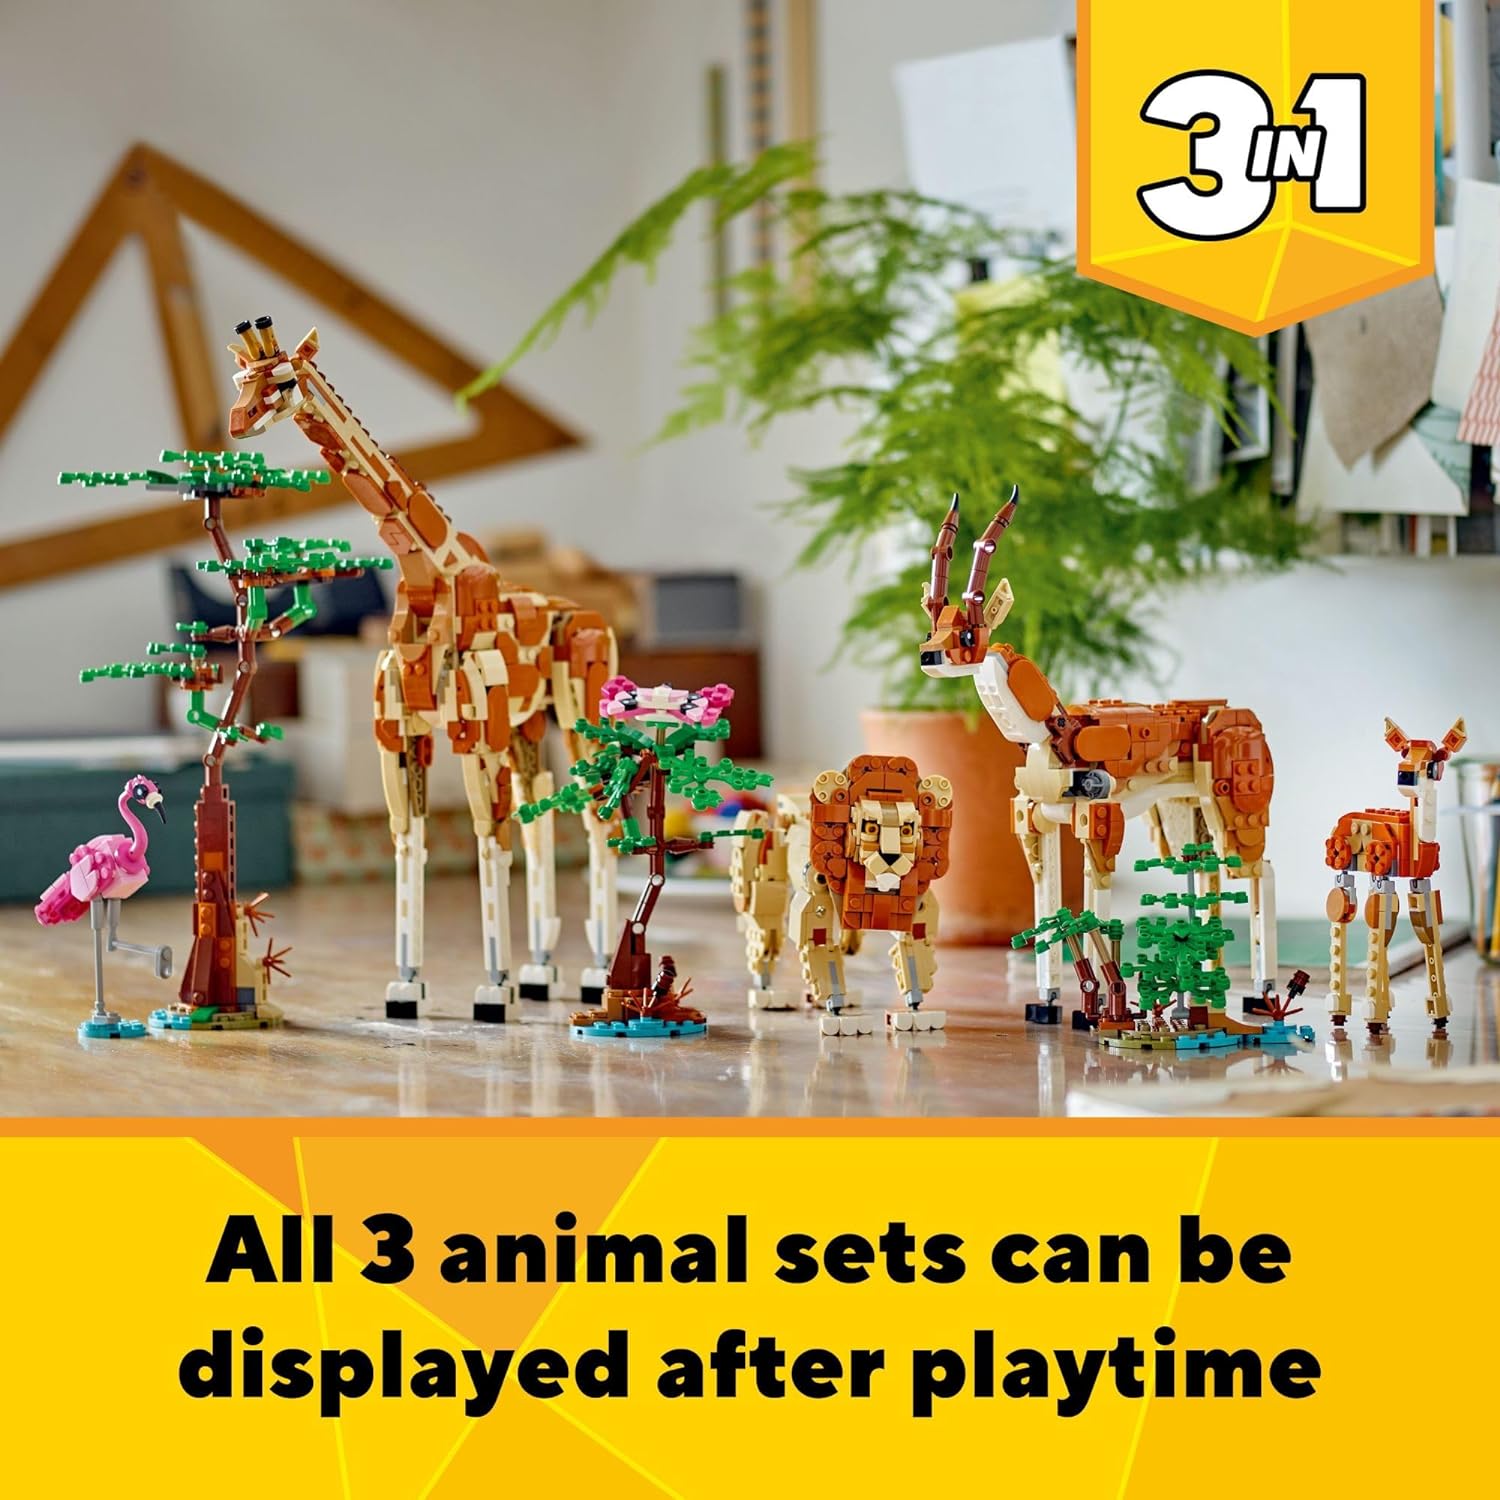 ليجو 31150 كرياتور 3 في 1 حيوانات السفاري البرية، يتم إعادة البناء إلى 3 أشكال مختلفة لحيوانات السفاري - لعبة الزرافة، لعبة الغزال أو لعبة الأسد، لعبة الطبيعة، مجموعة بناء للأطفال.